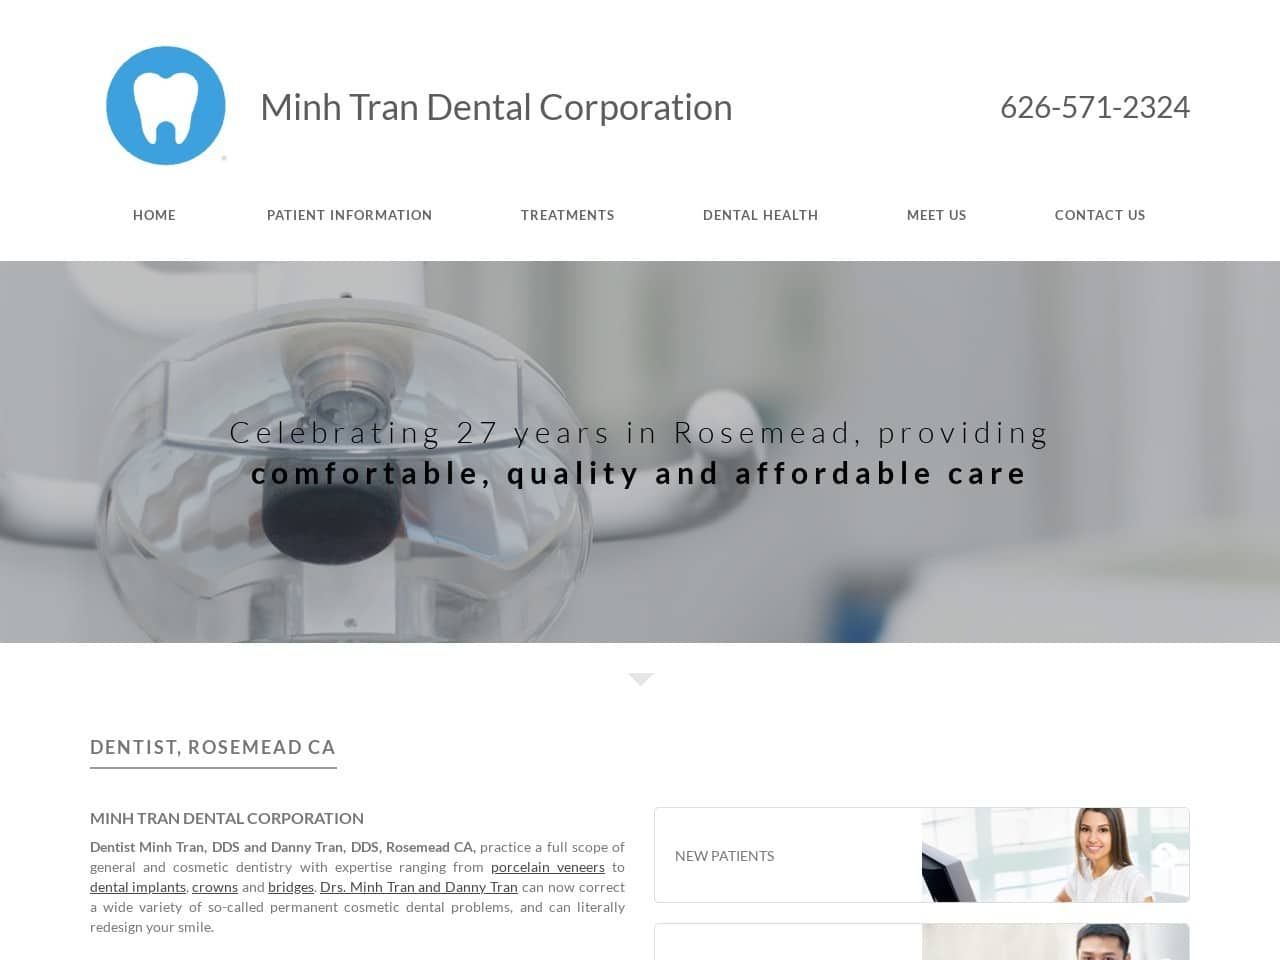 Minh Tran Dental Corporation Website Screenshot from tranfamilydental.com